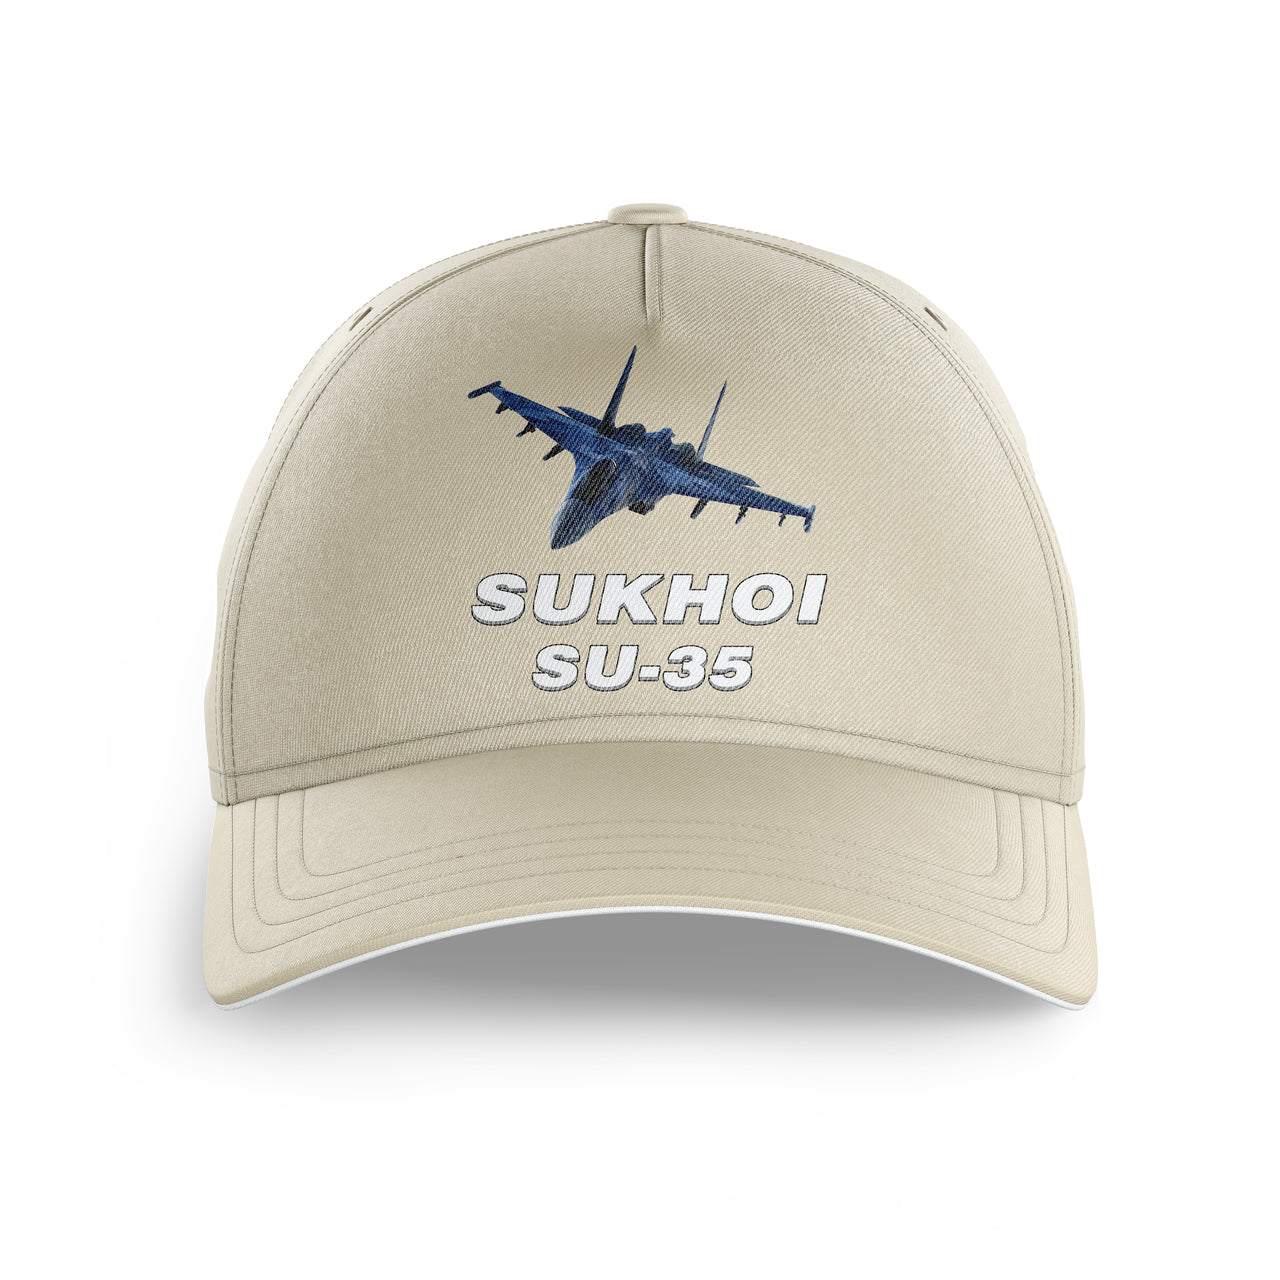 The Sukhoi SU-35 Printed Hats